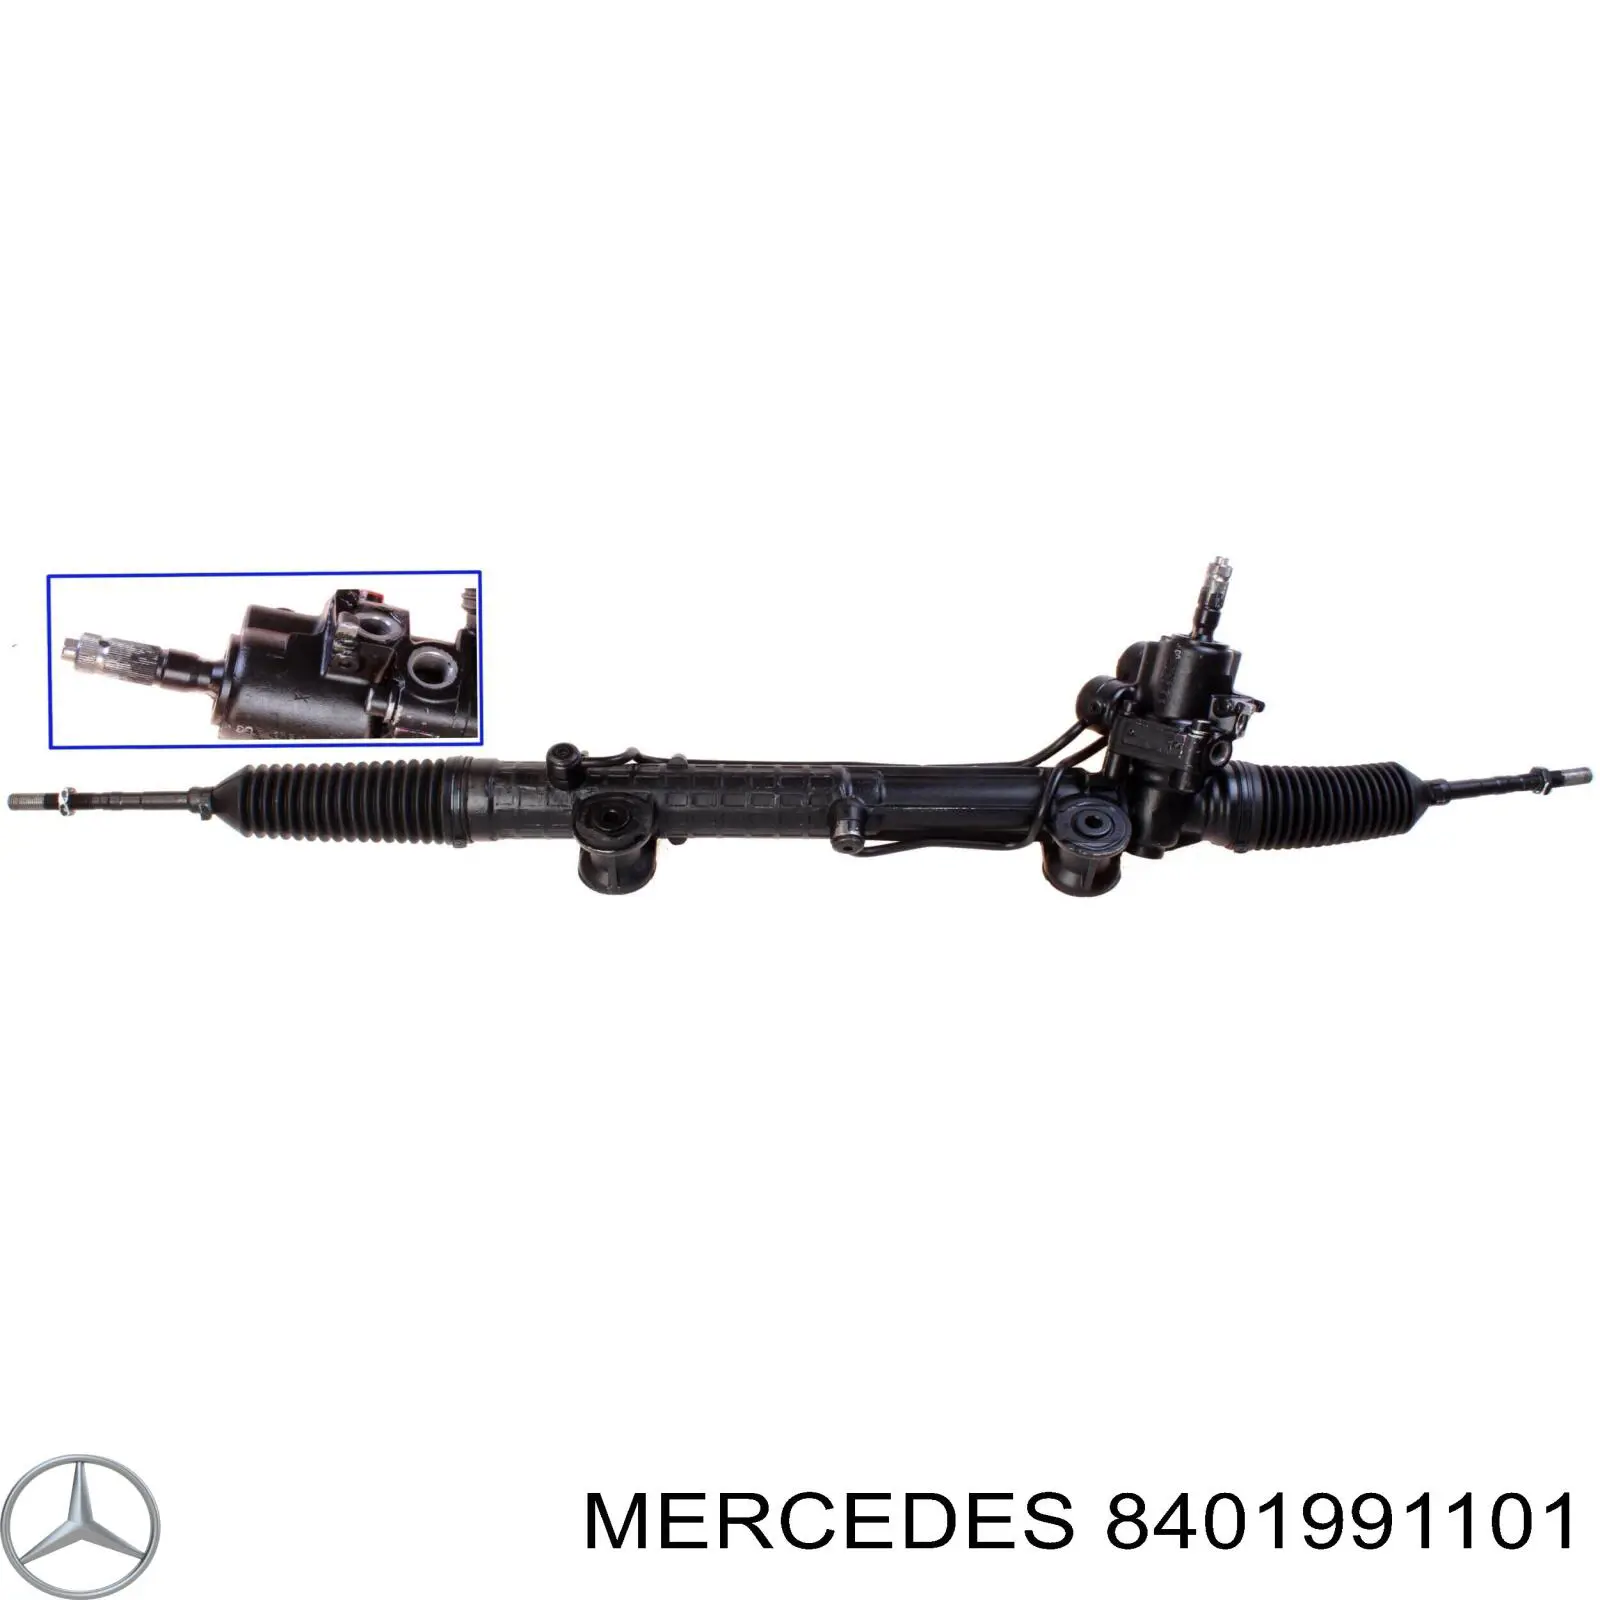 8401991101 Mercedes cremallera de dirección